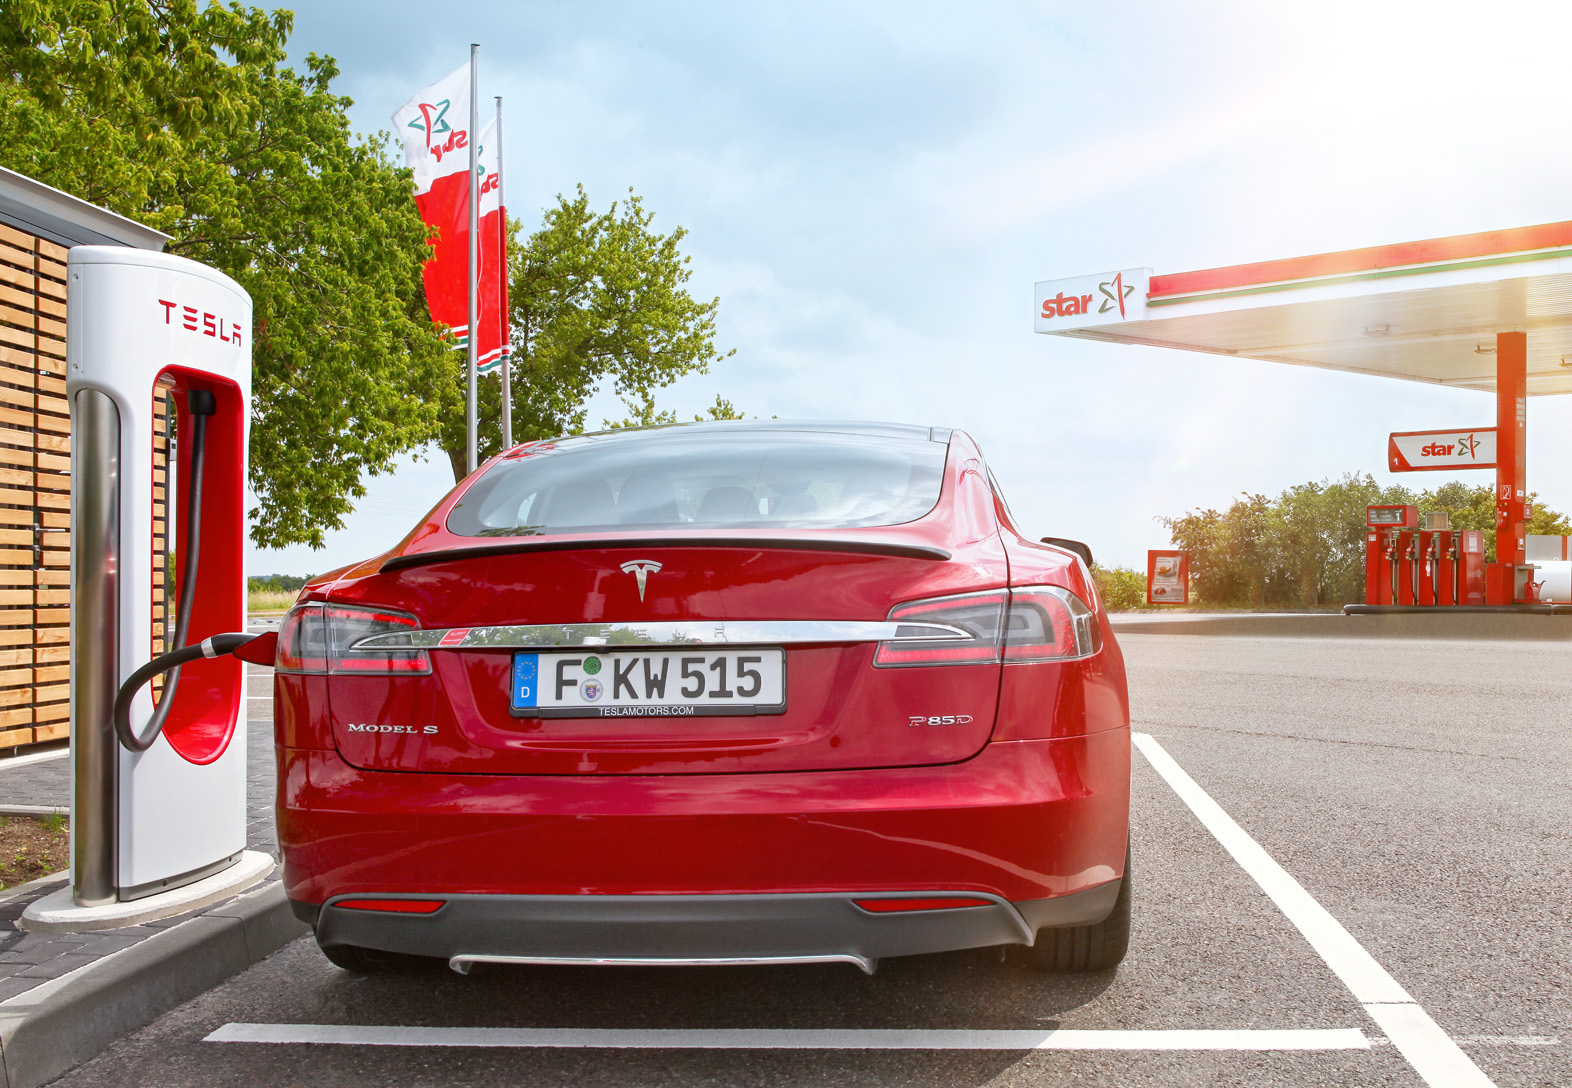 star Tankstellen_Alternative Mobilitaet_Tesla Super Charger ©ORLEN Deutschland.jpg